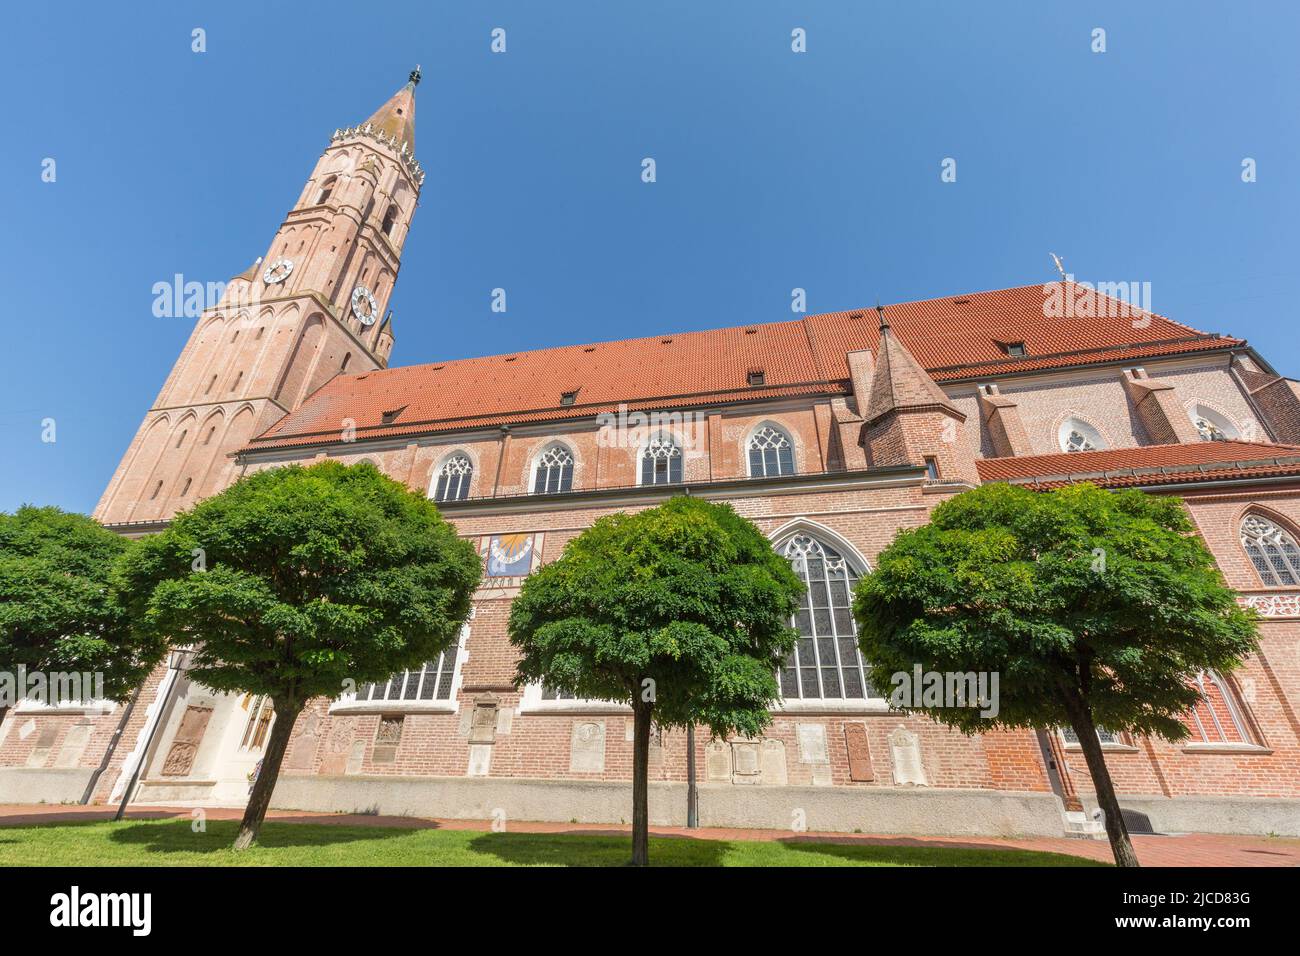 Landshut, Alemania - 15 de agosto de 2021: Vista sobre St. Jodok. La arquitectura de ladrillo más fina. Foto de stock